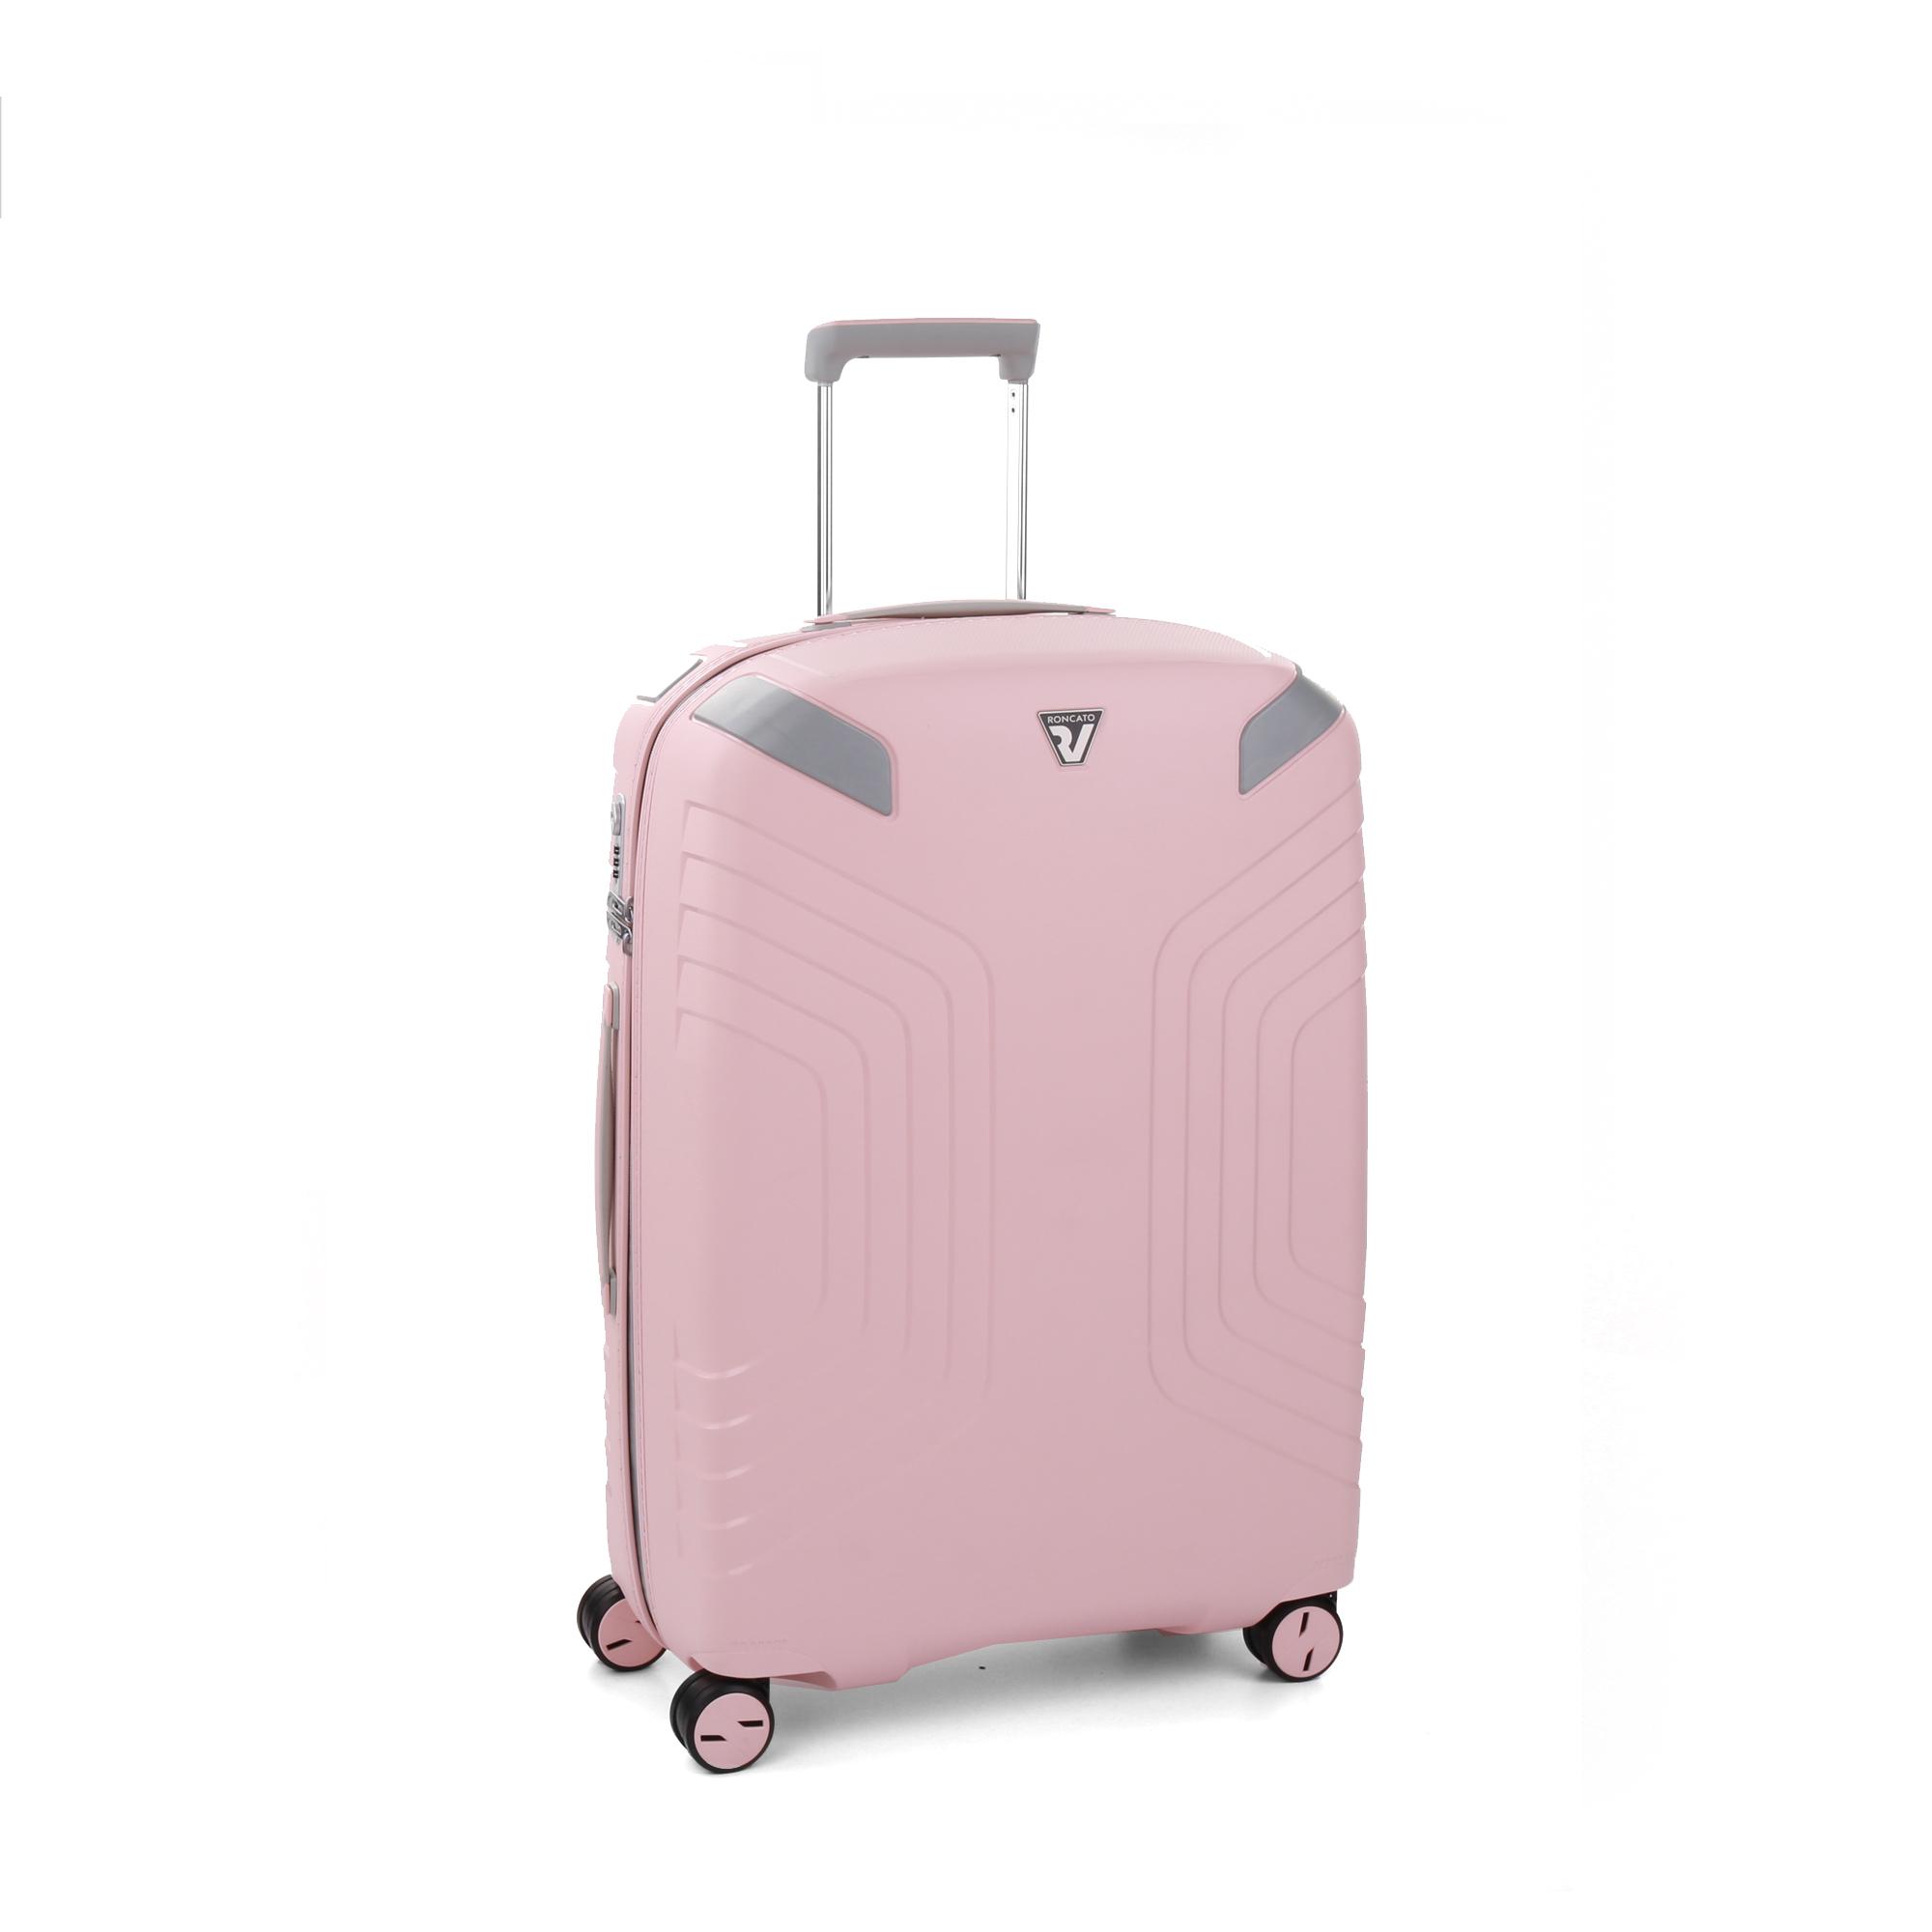 Середня валіза Roncato YPSILON 5772/1111 рожевий кварц